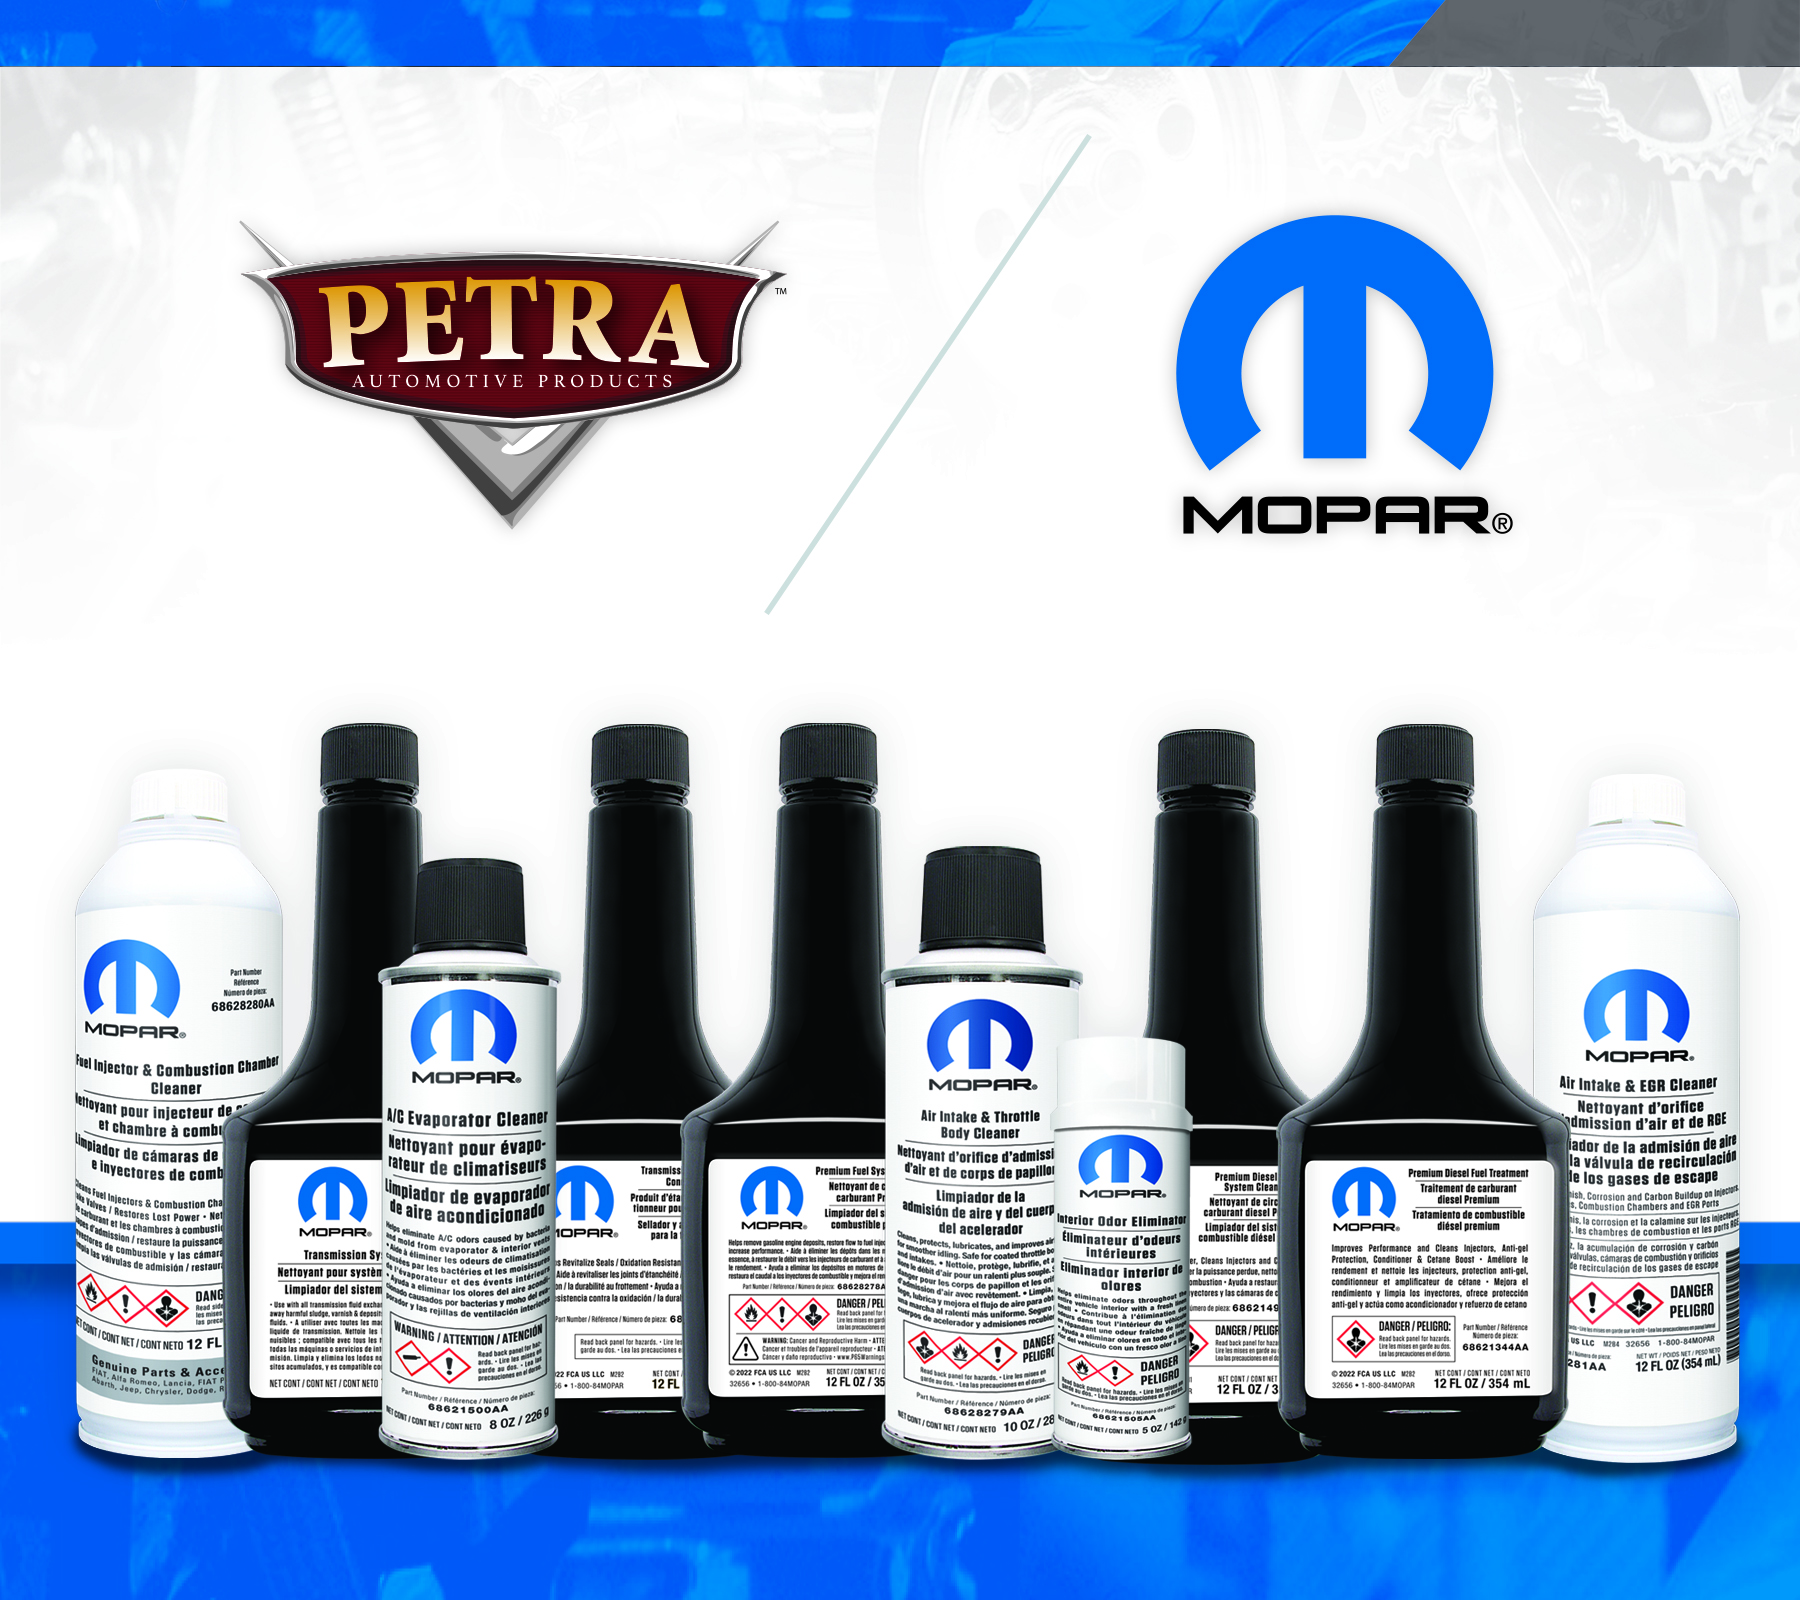 Petra Mopar Products